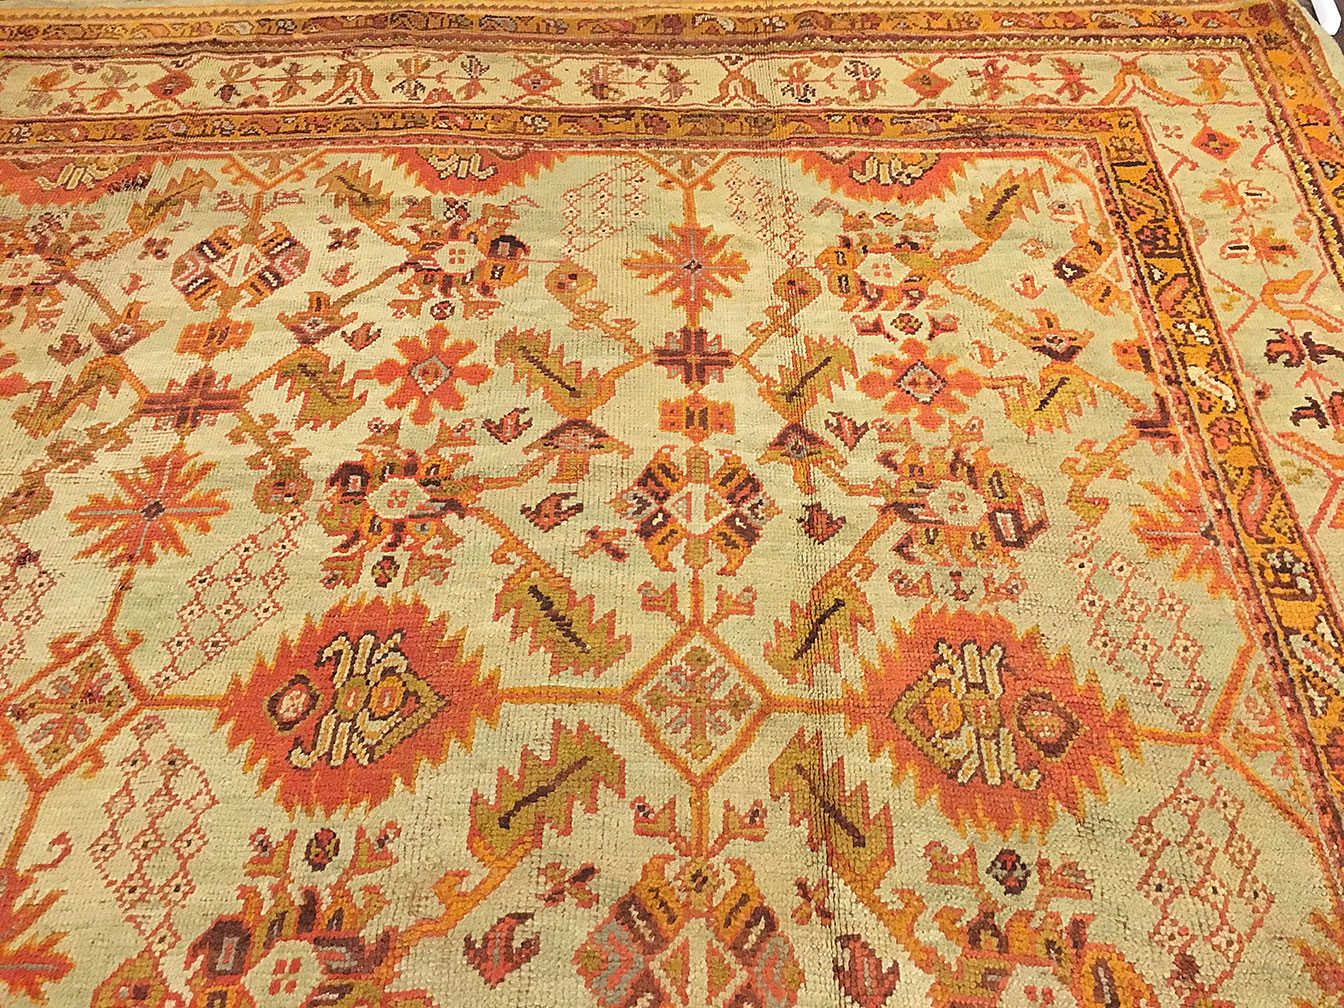 Antique oushak Carpet - # 53480